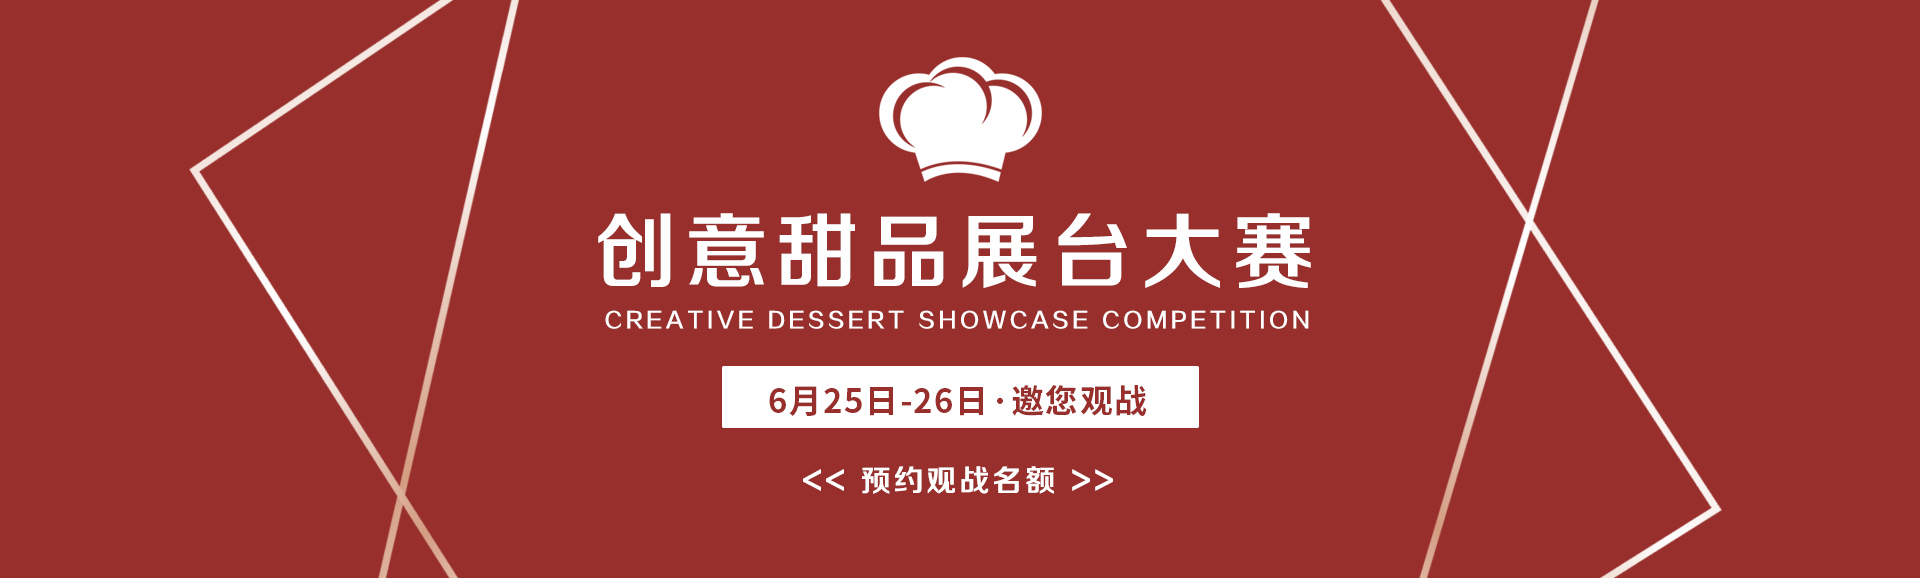 上海欧米奇西点培训学校 上海欧米奇创意甜点展台大赛